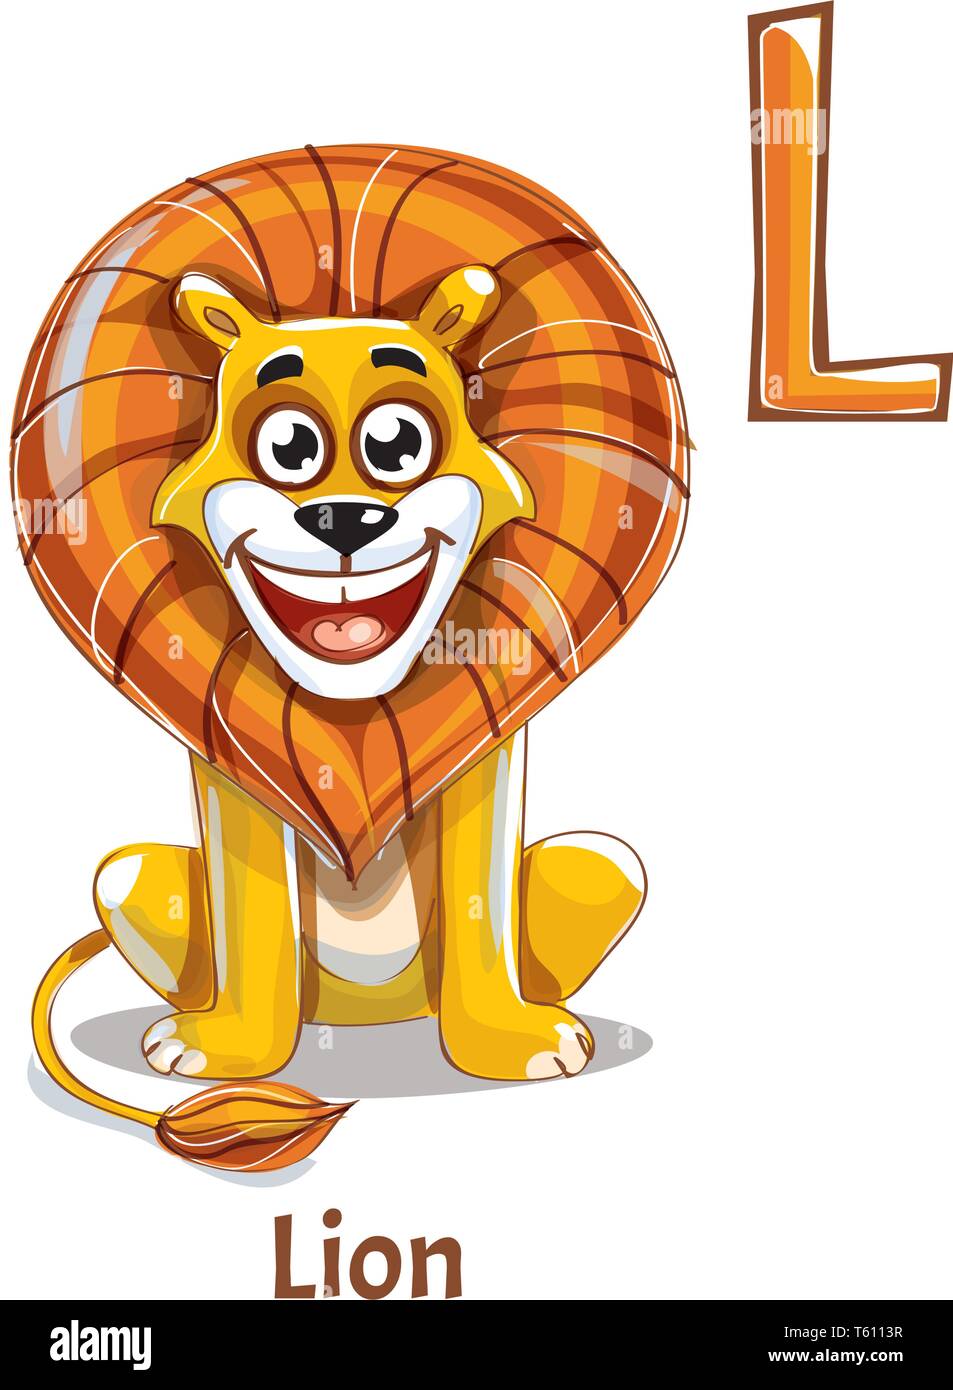 Alphabet letter L. Lion Stock Vector